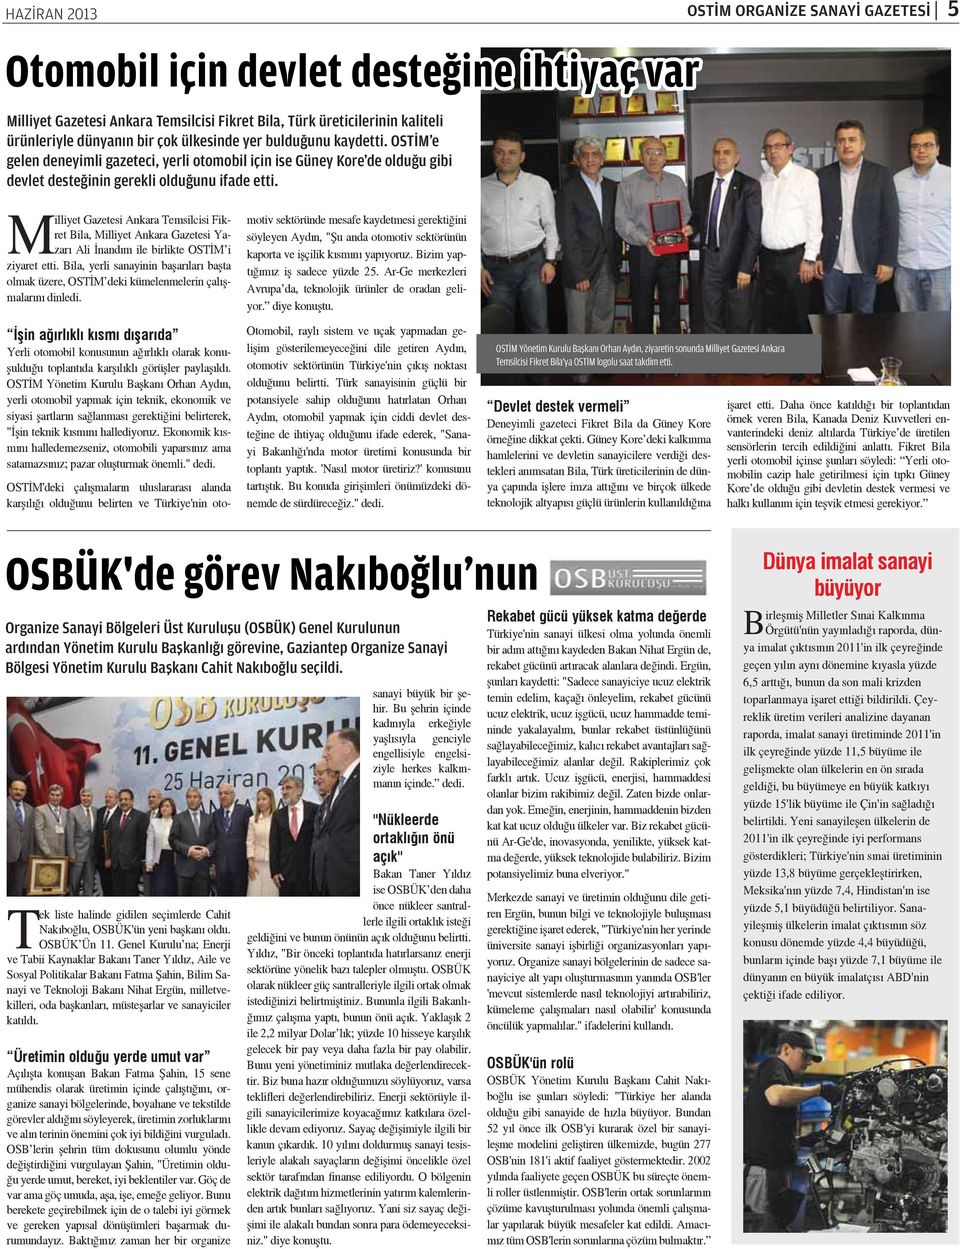 Milliyet Gazetesi Ankara Temsilcisi Fikret Bila, Milliyet Ankara Gazetesi Yazarı Ali İnandım ile birlikte OSTİM i ziyaret etti.